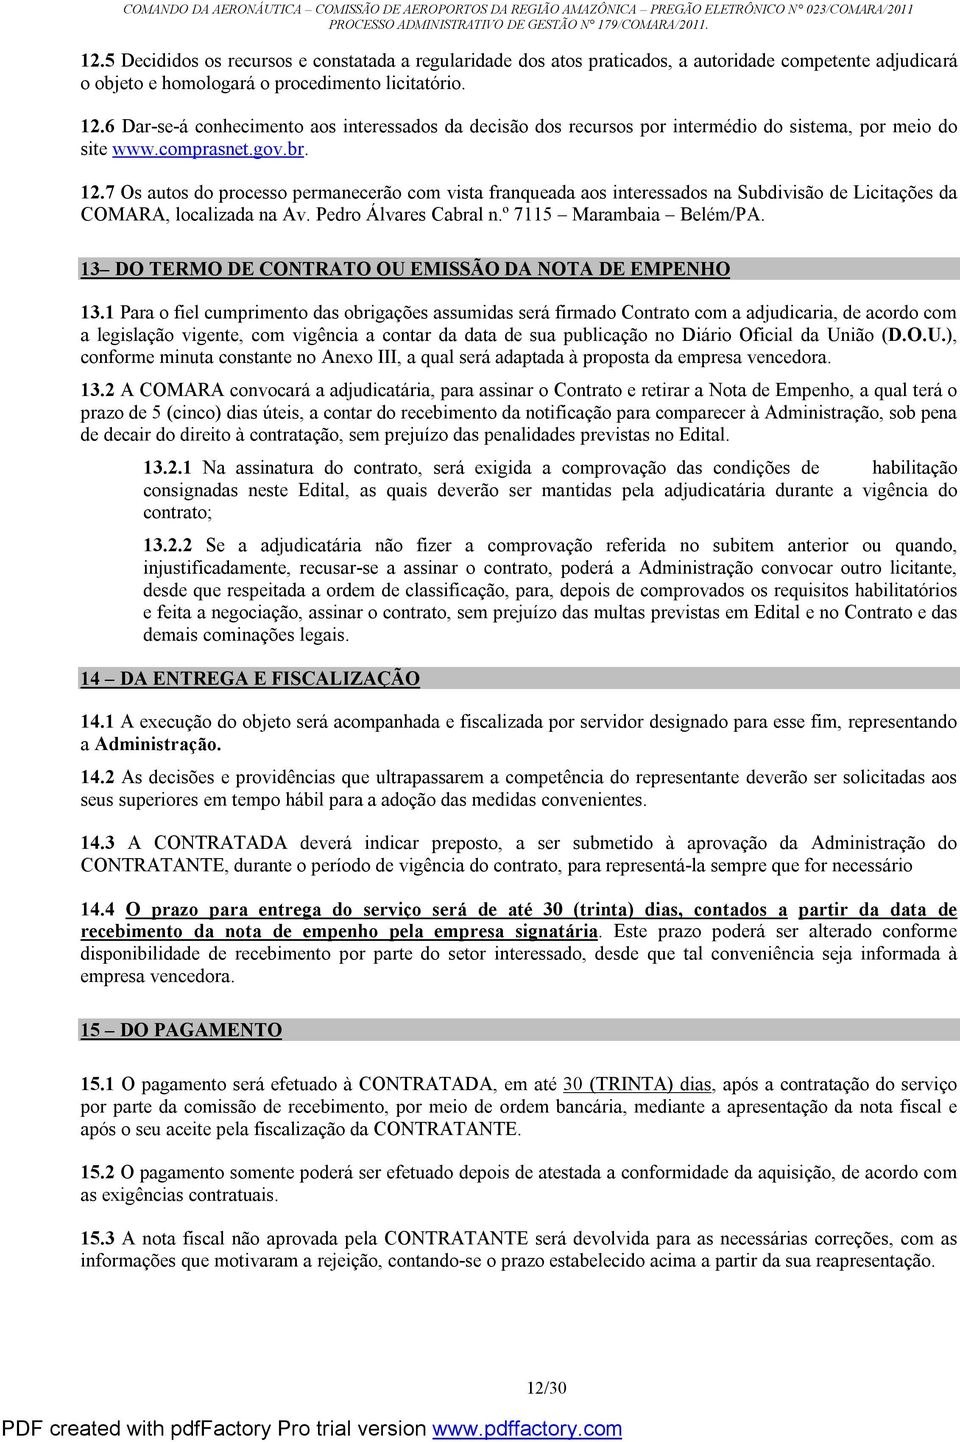 7 Os autos do processo permanecerão com vista franqueada aos interessados na Subdivisão de Licitações da COMARA, localizada na Av. Pedro Álvares Cabral n.º 7115 Marambaia Belém/PA.